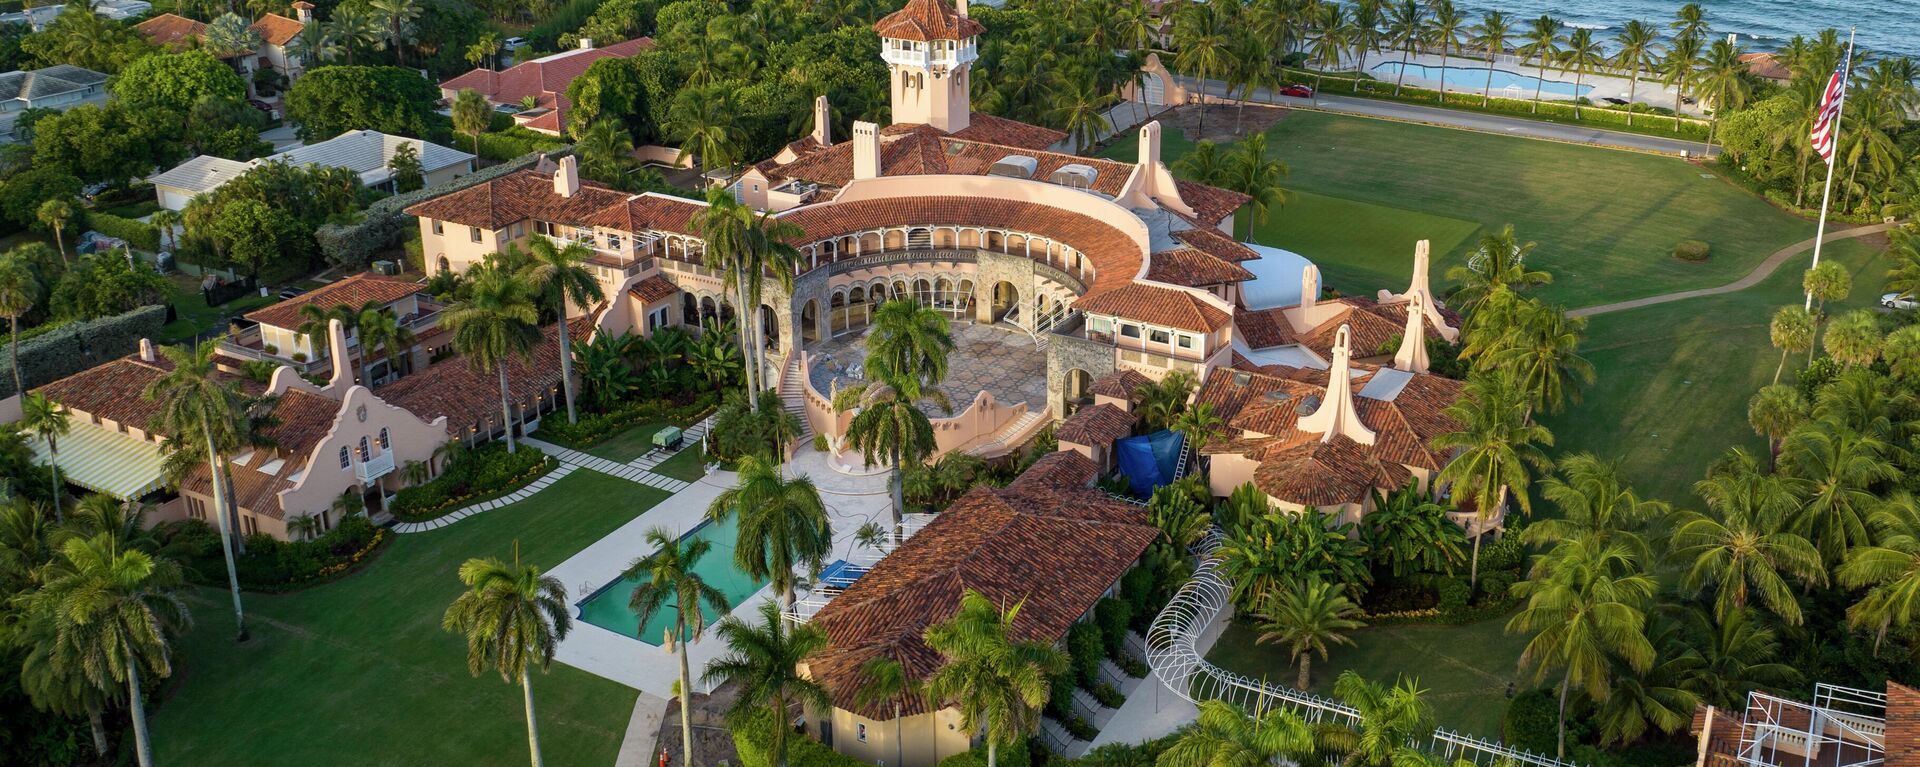 ARQUIVO - Esta é uma vista aérea da propriedade Mar-a-Lago do presidente Donald Trump, 10 de agosto de 2022, em Palm Beach, Flórida - Sputnik International, 1920, 01.03.2023